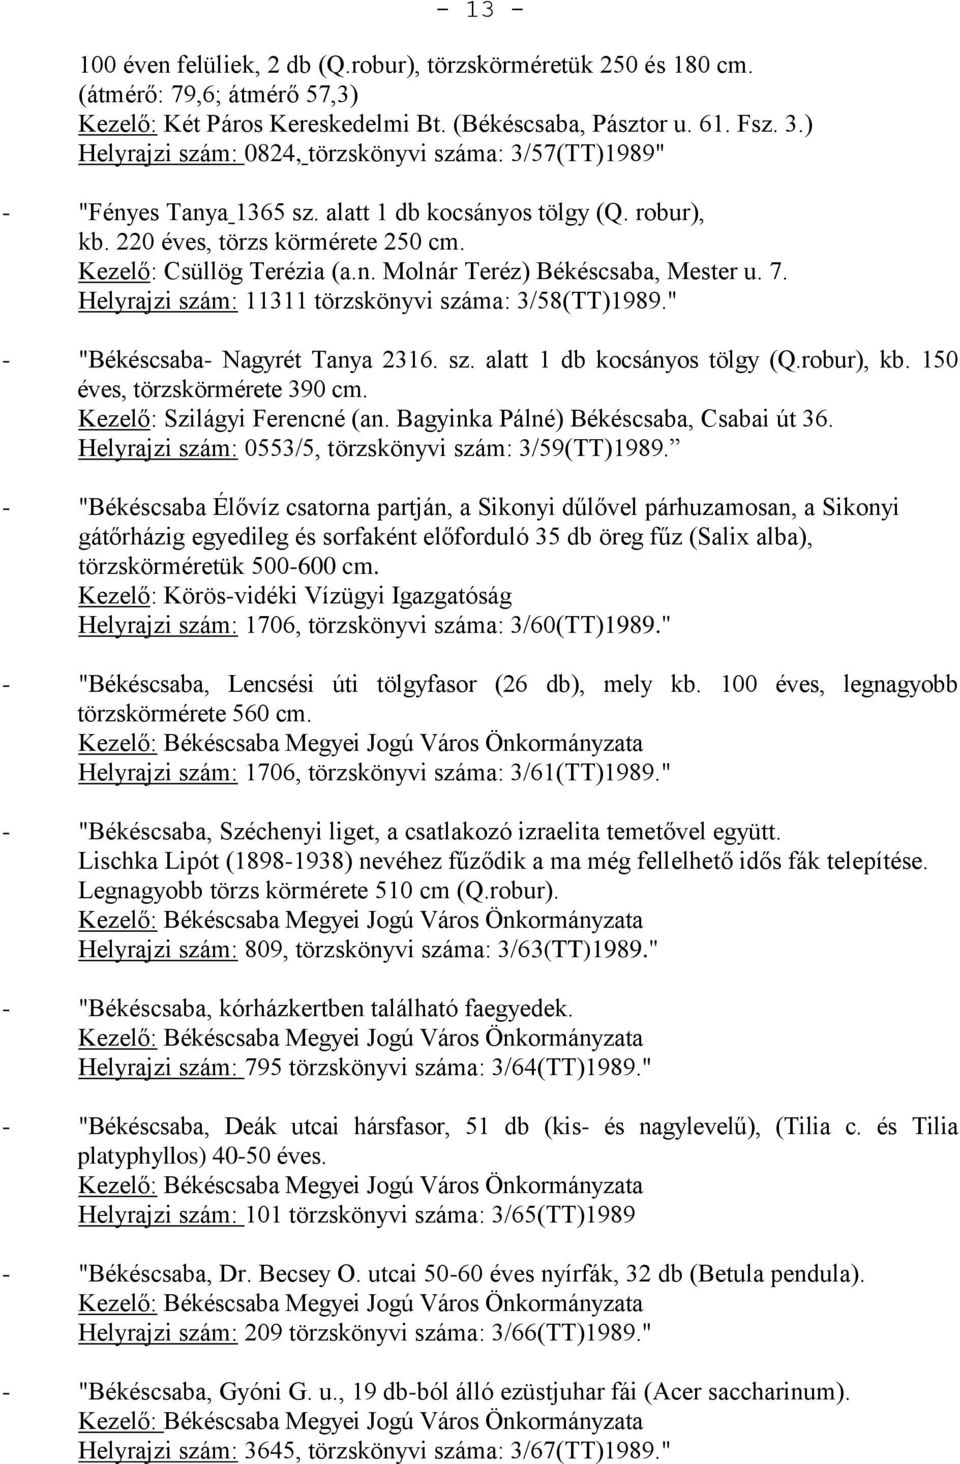 7. Helyrajzi szám: 11311 törzskönyvi száma: 3/58(TT)1989." - "Békéscsaba- Nagyrét Tanya 2316. sz. alatt 1 db kocsányos tölgy (Q.robur), kb. 150 éves, törzskörmérete 390 cm.